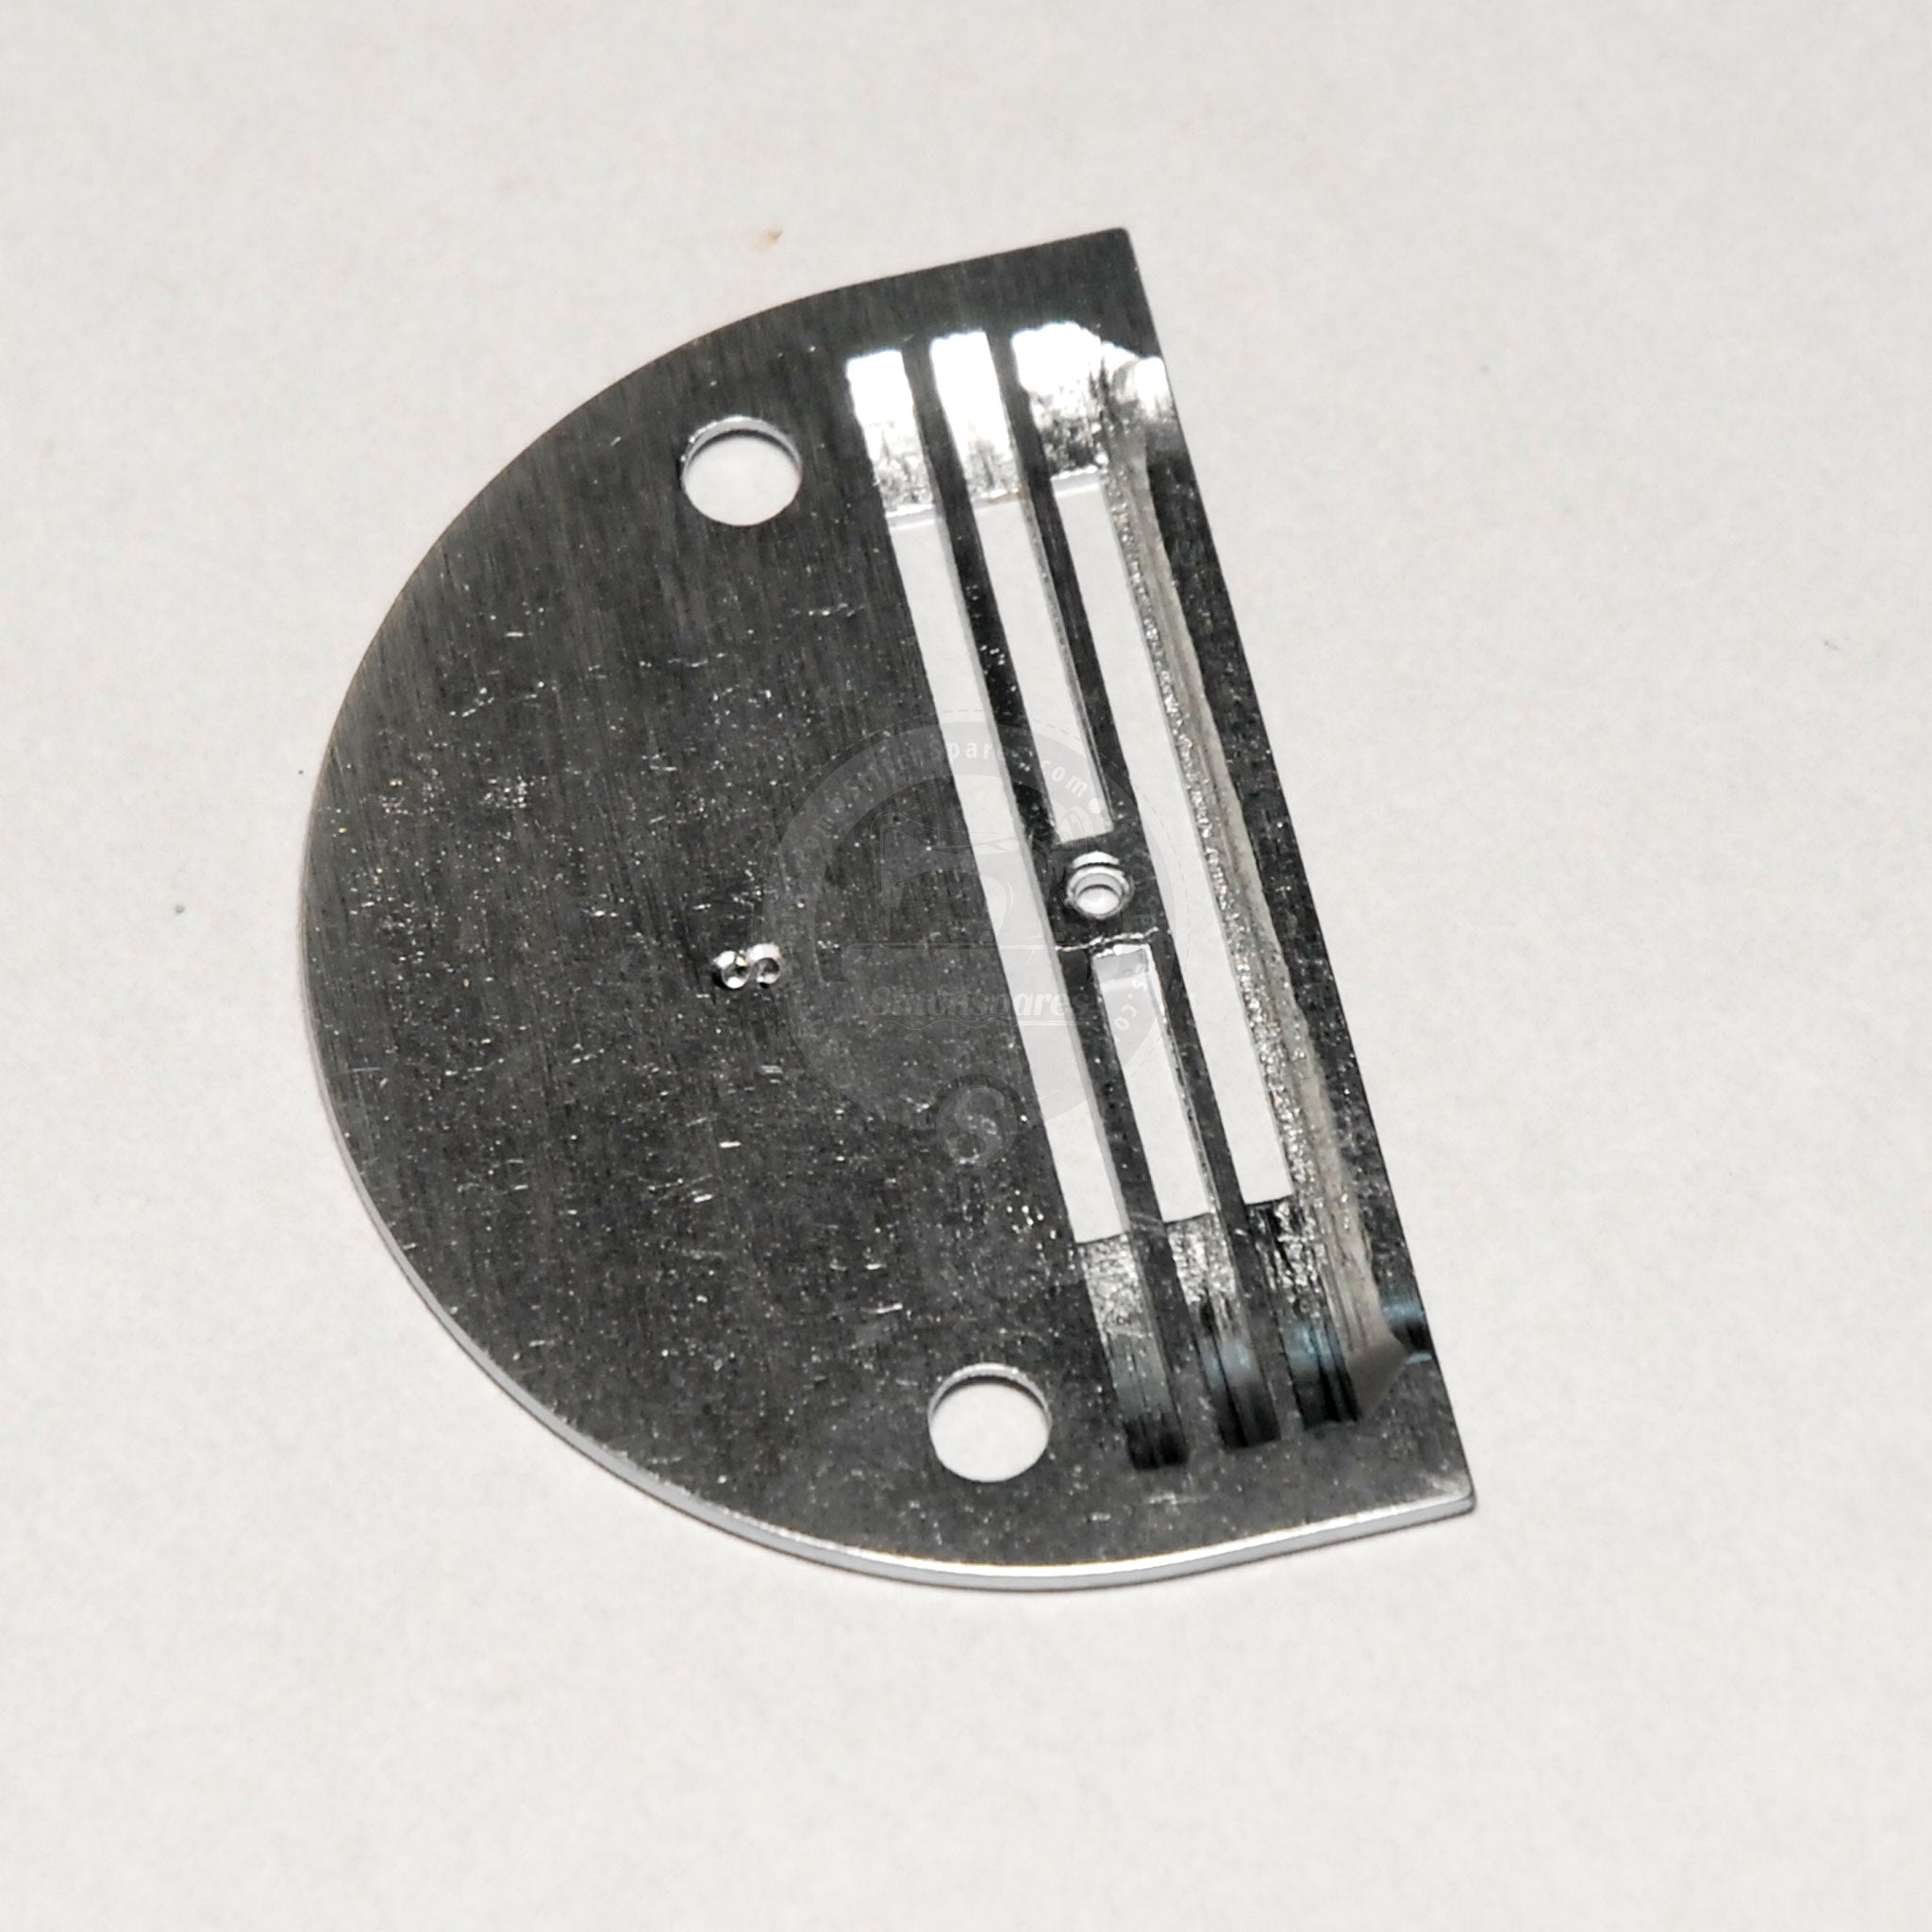 # 11315001 Placa de aguja para repuestos para máquinas de coser industriales JACK F4